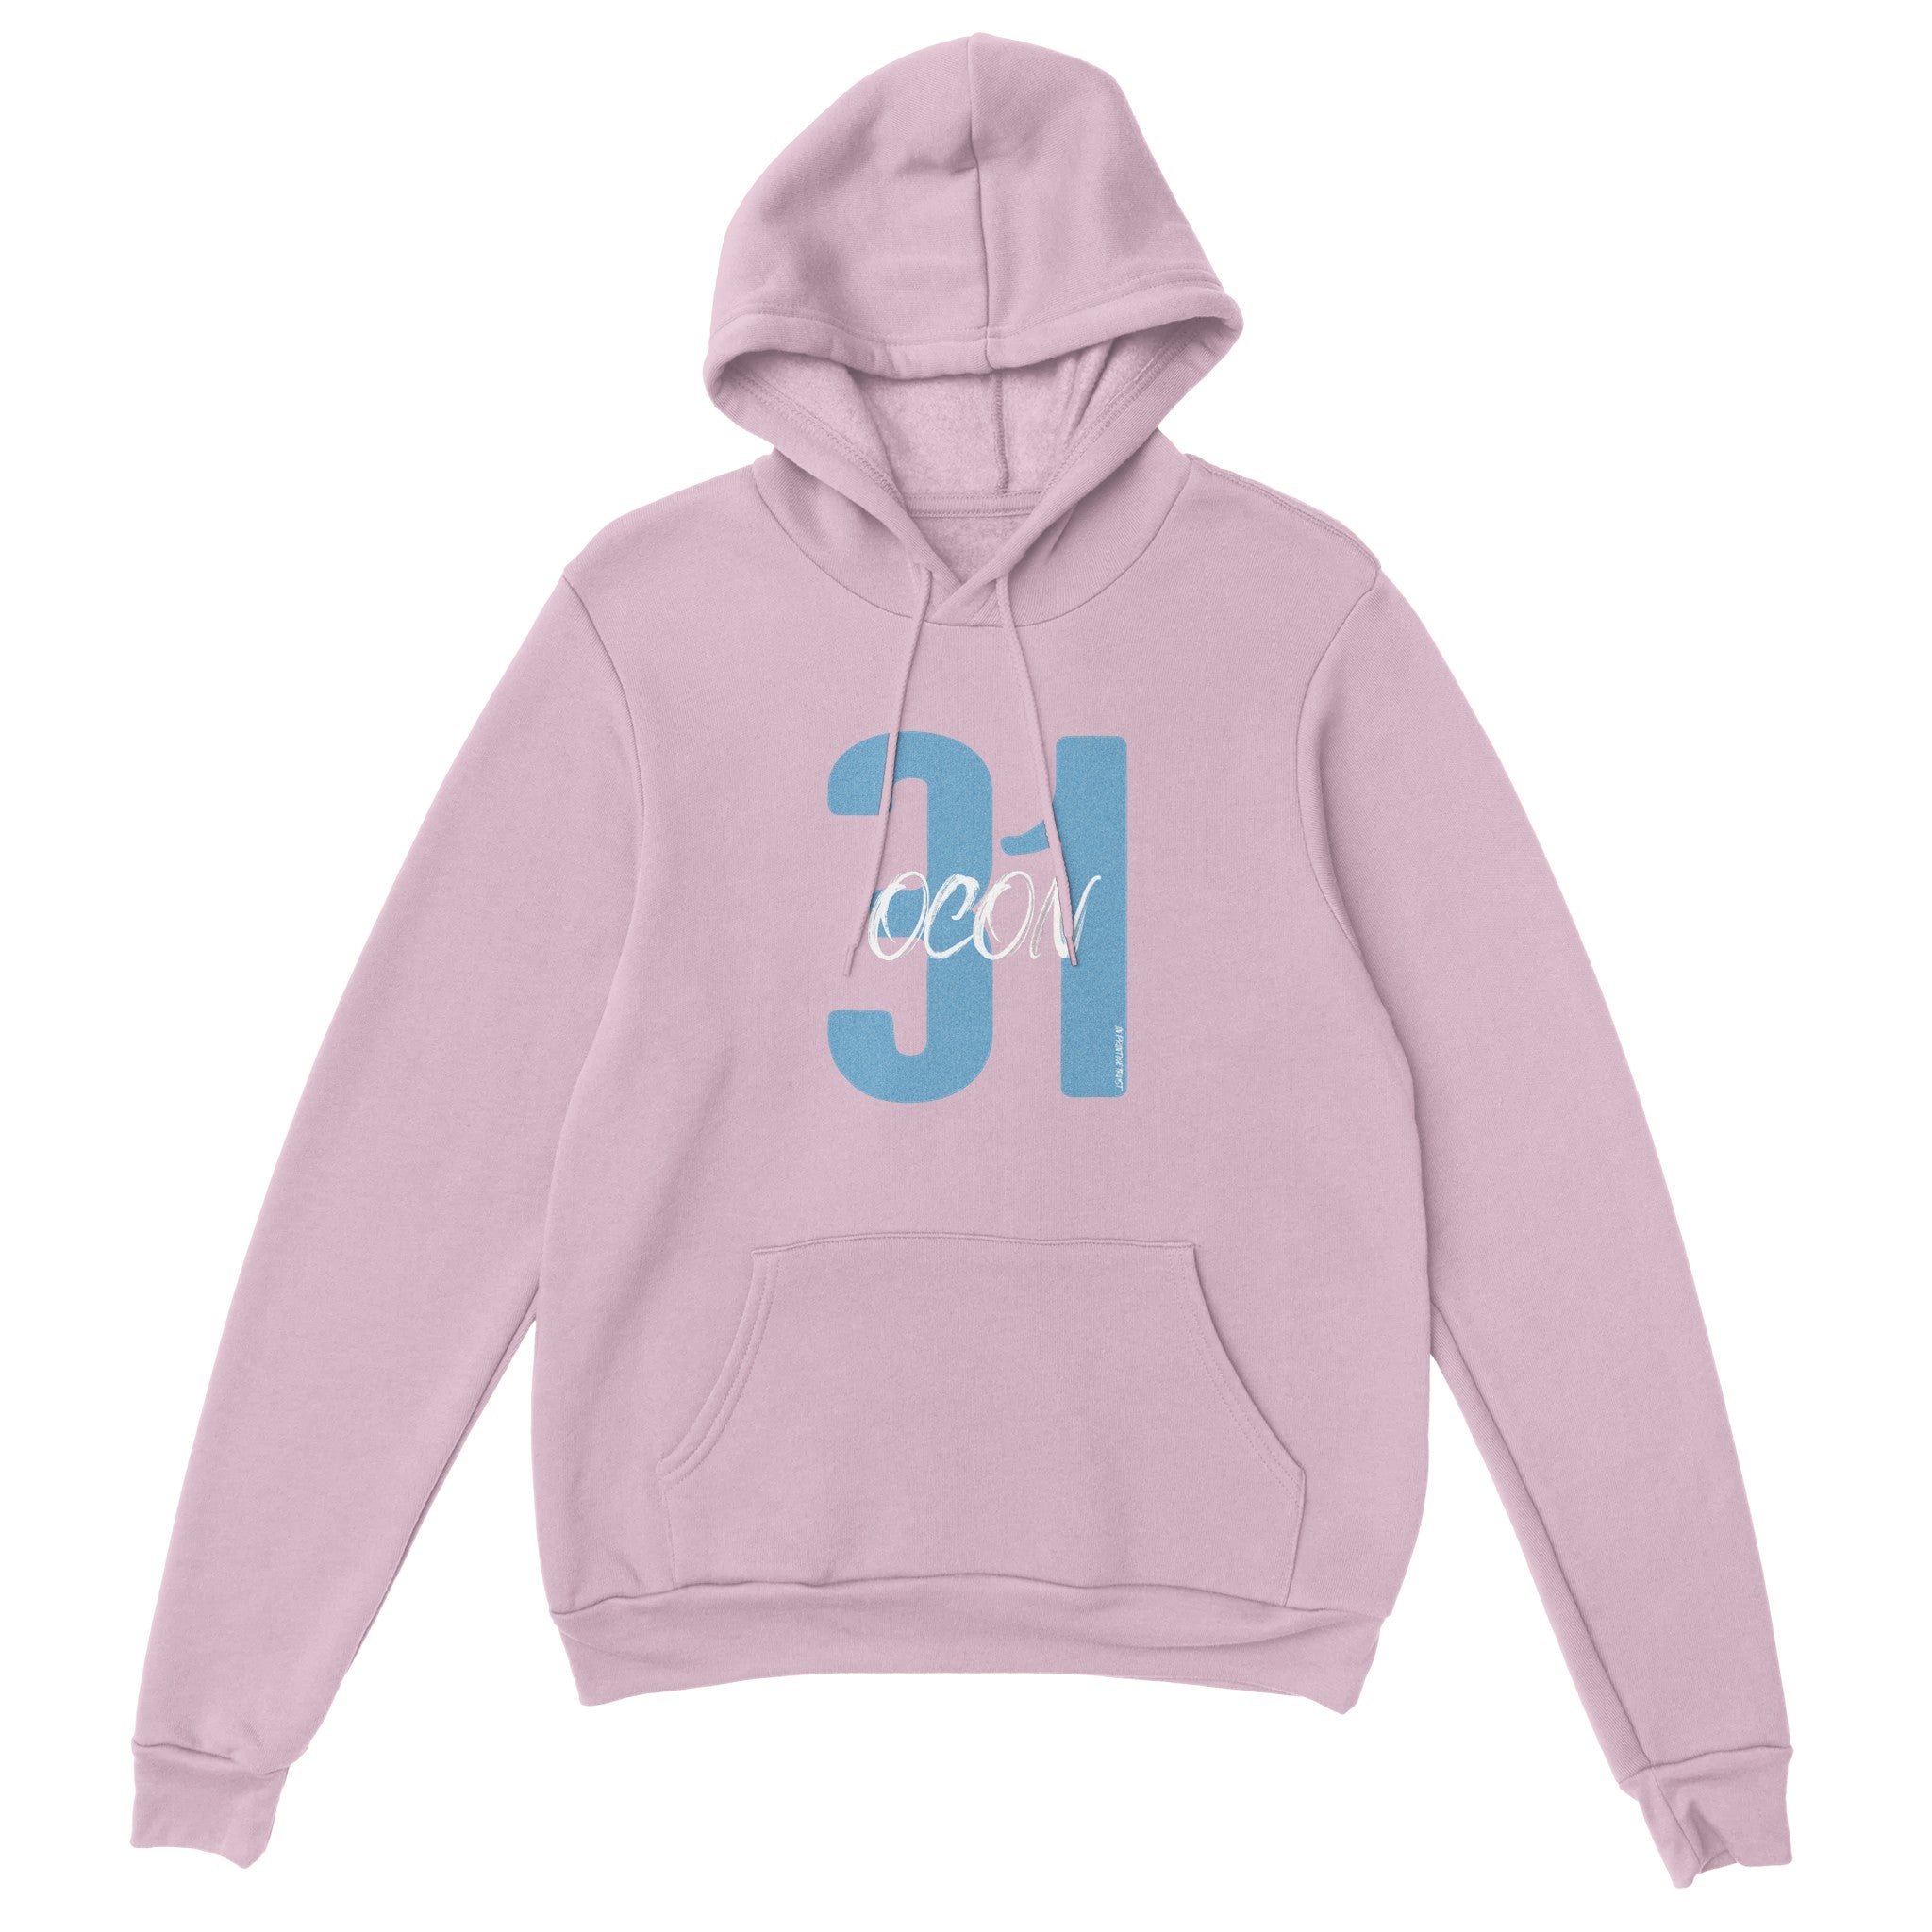 'Ocon 31' hoodie - In Print We Trust